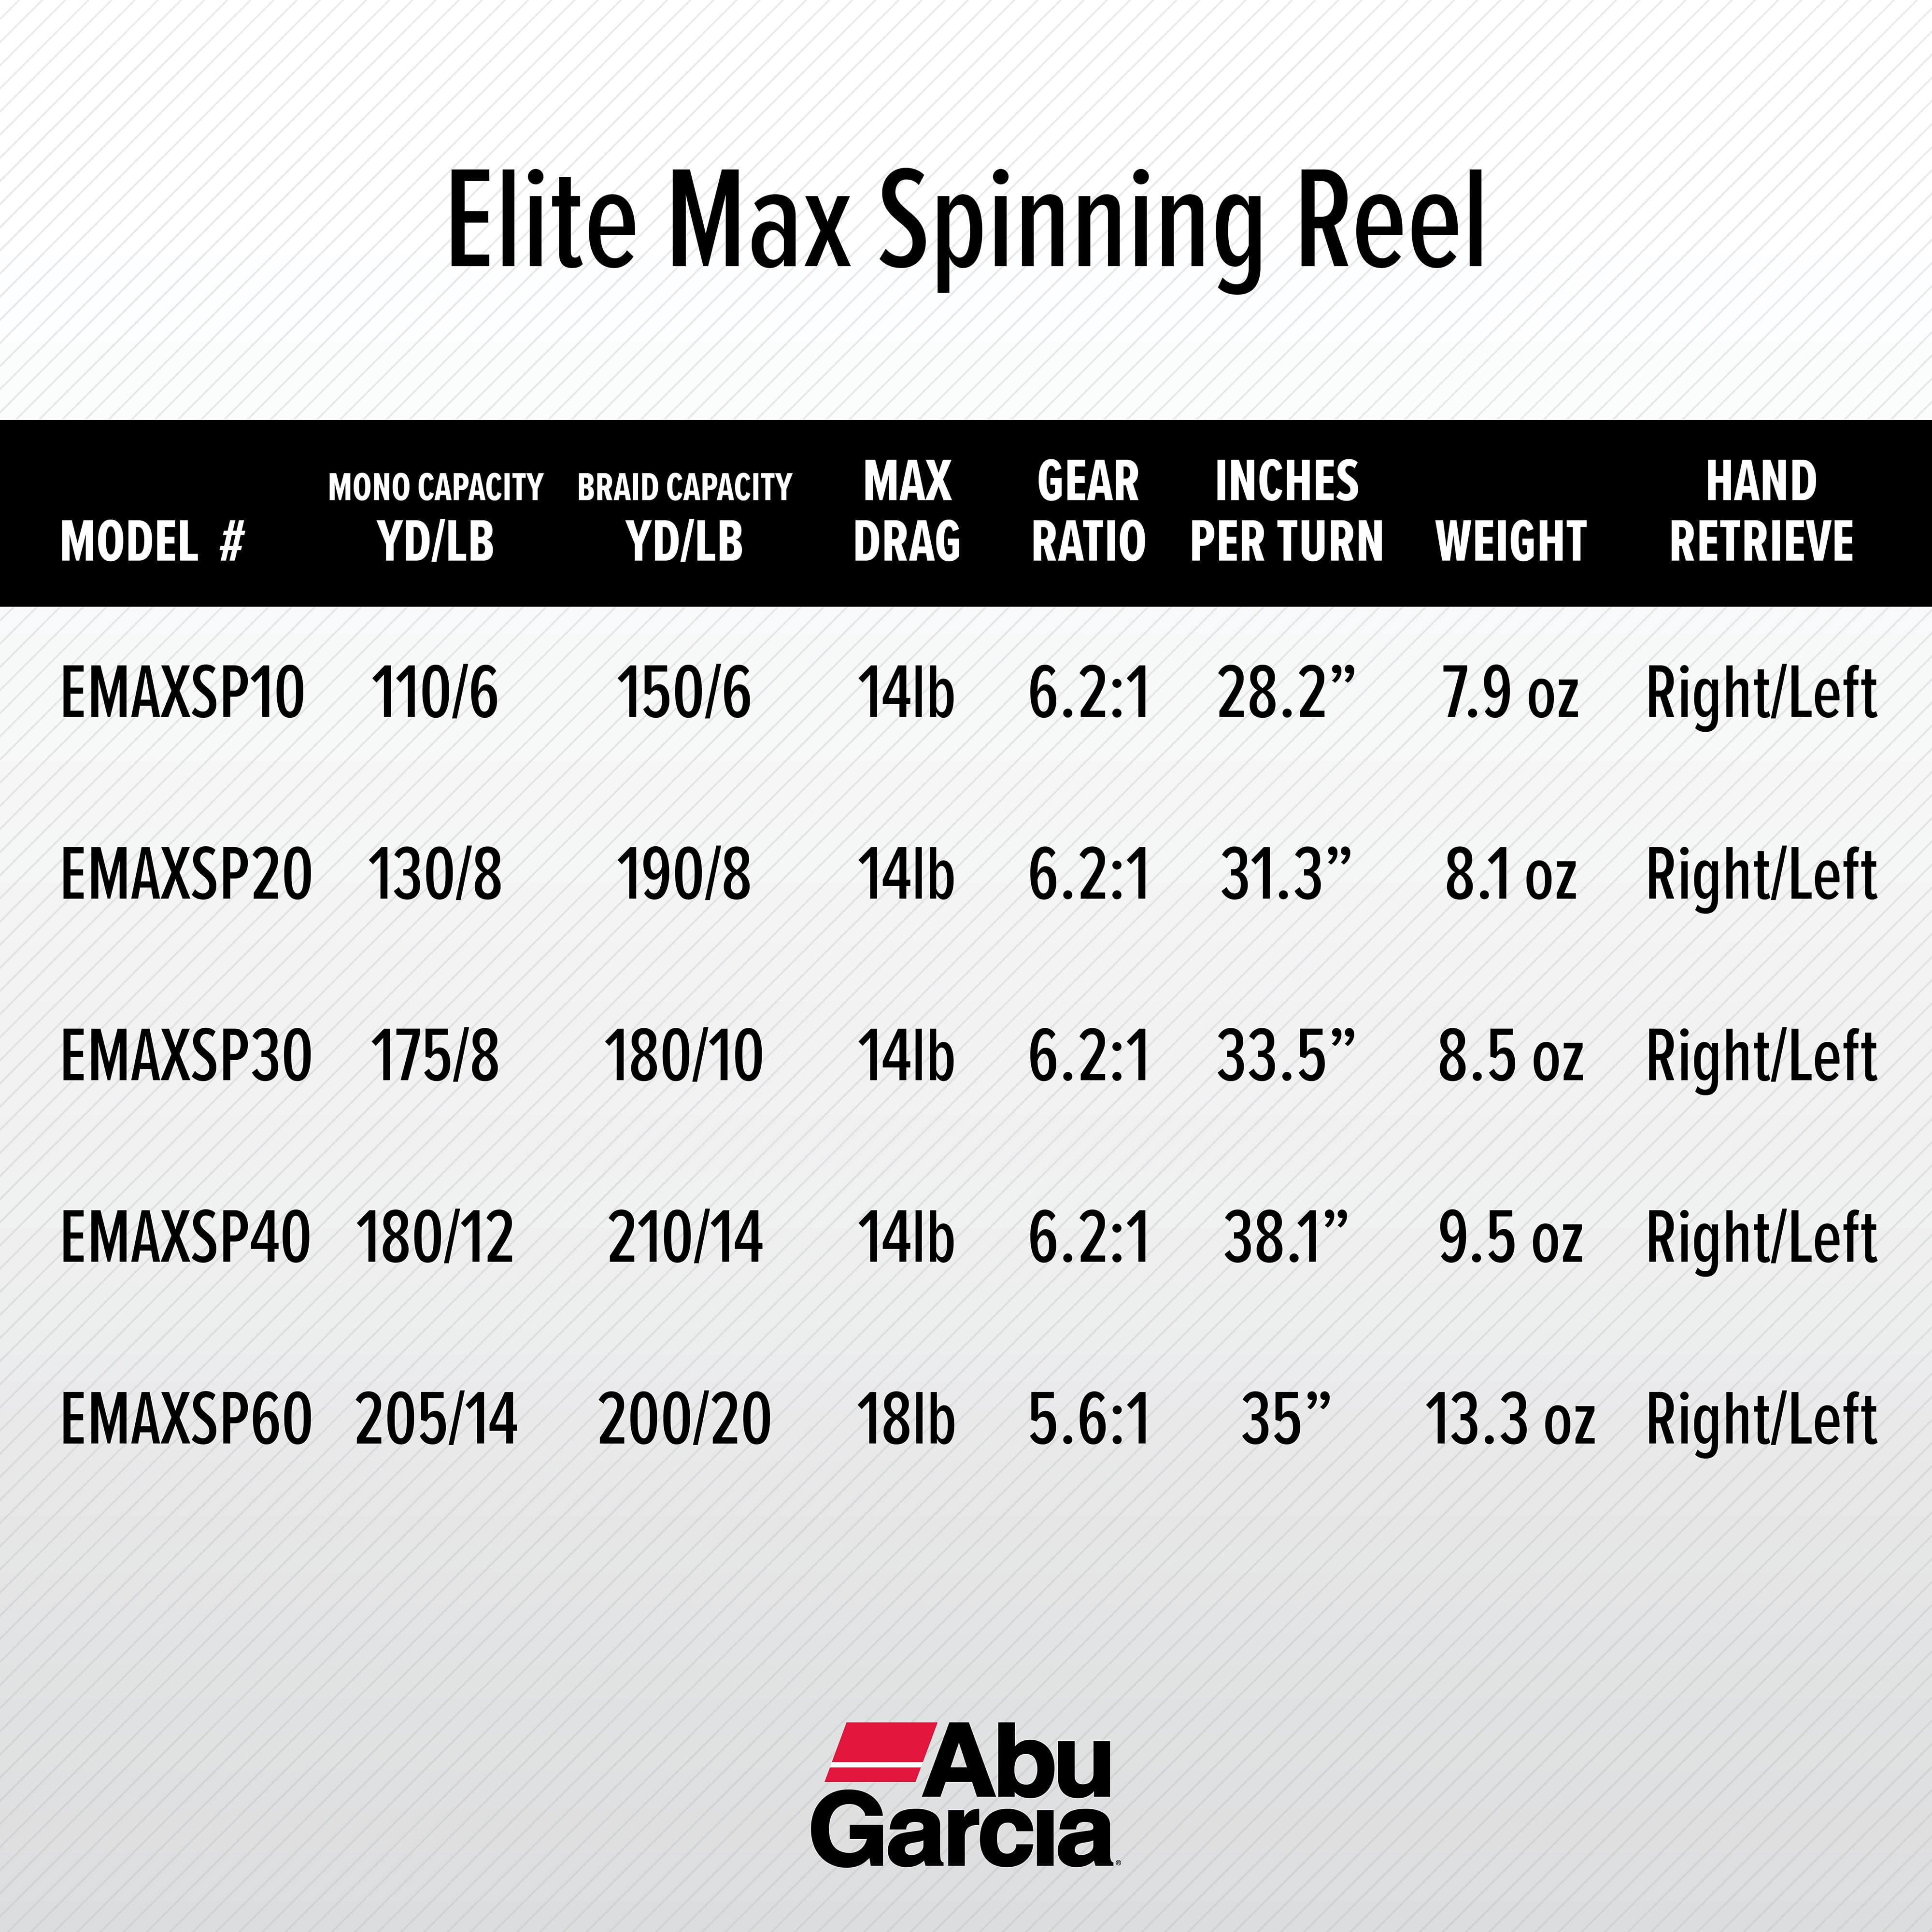 Abu Garcia Elite Max Spinning Fishing Reel, Size 60 (1475819